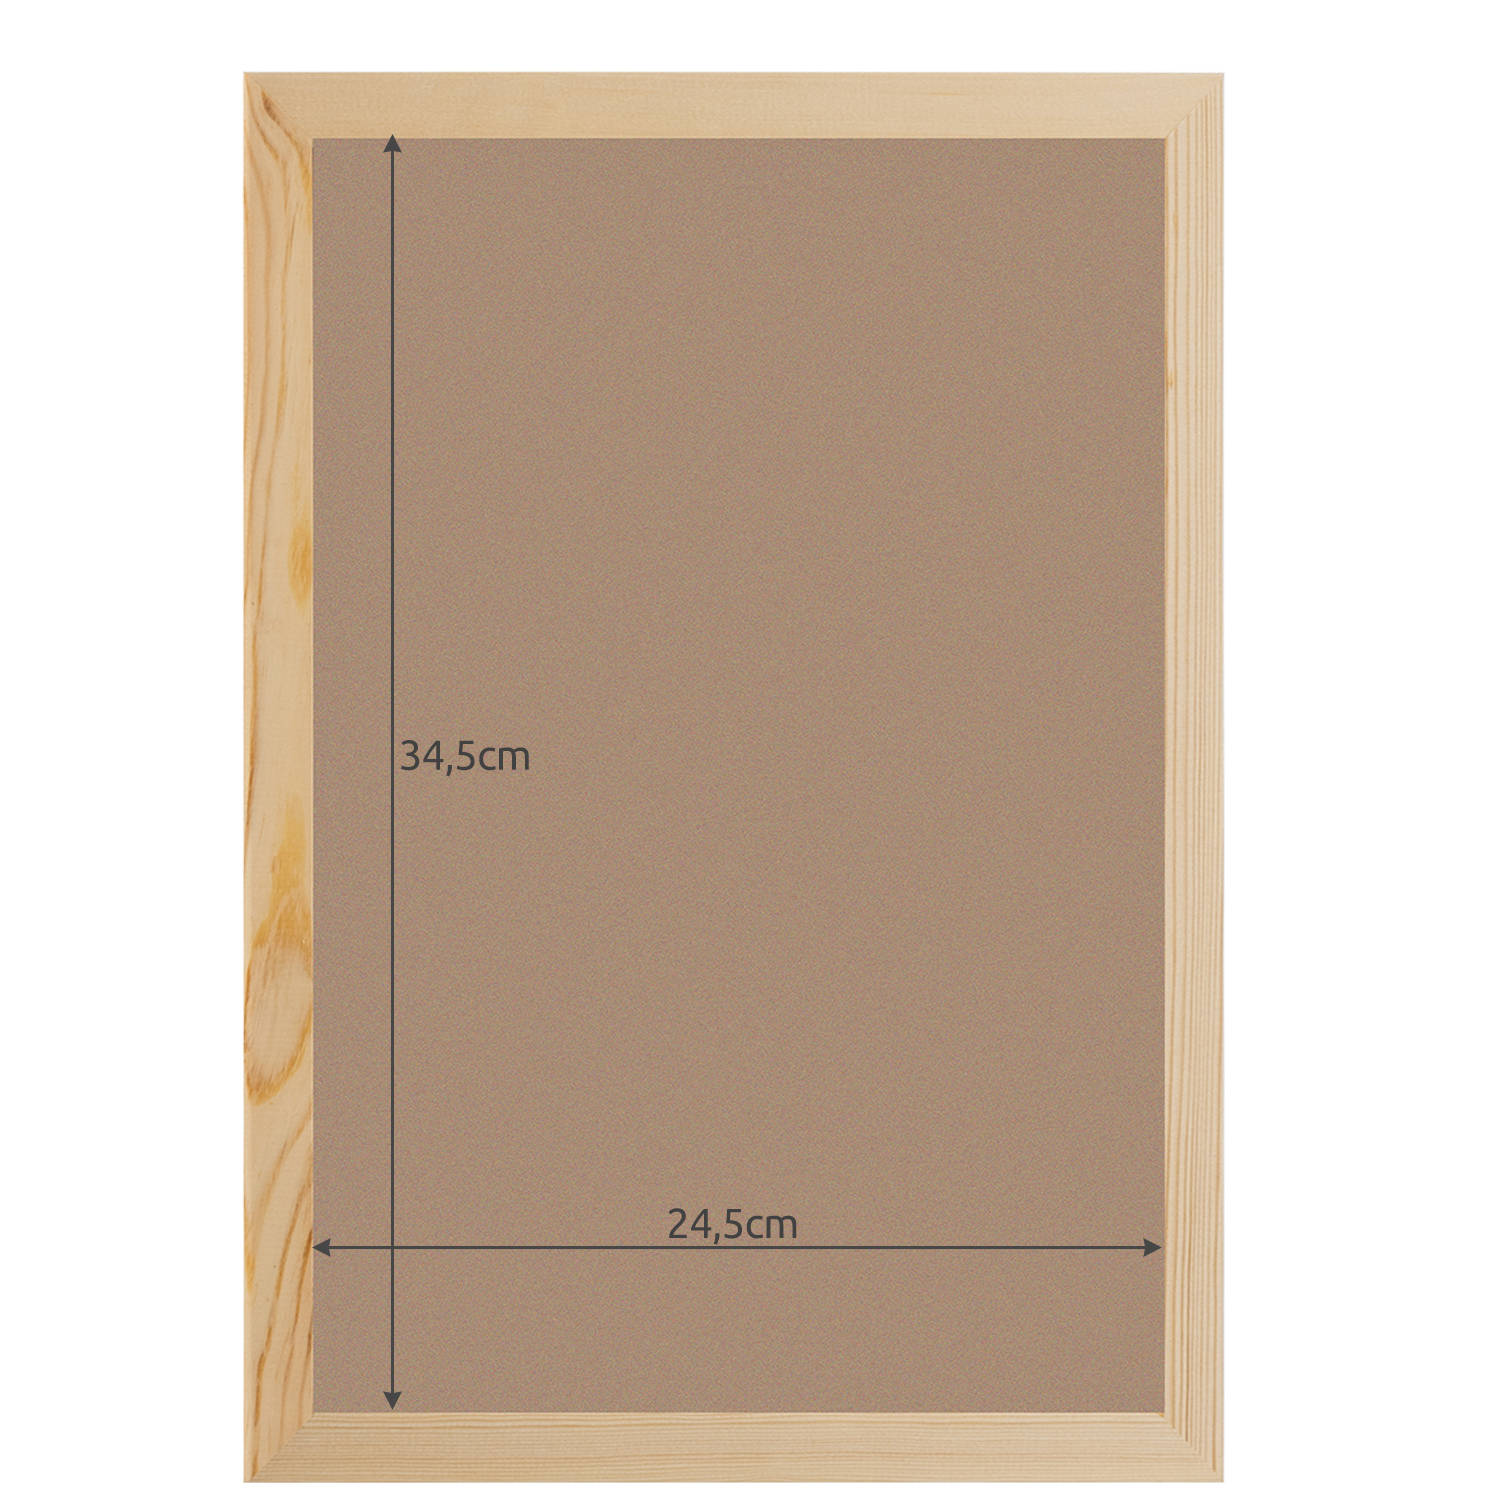 Fenyő képkeret, strasszkő és gyémántkirakókhoz – 24,5 x 34,5 cm, barna szín (BB-19917) (7)